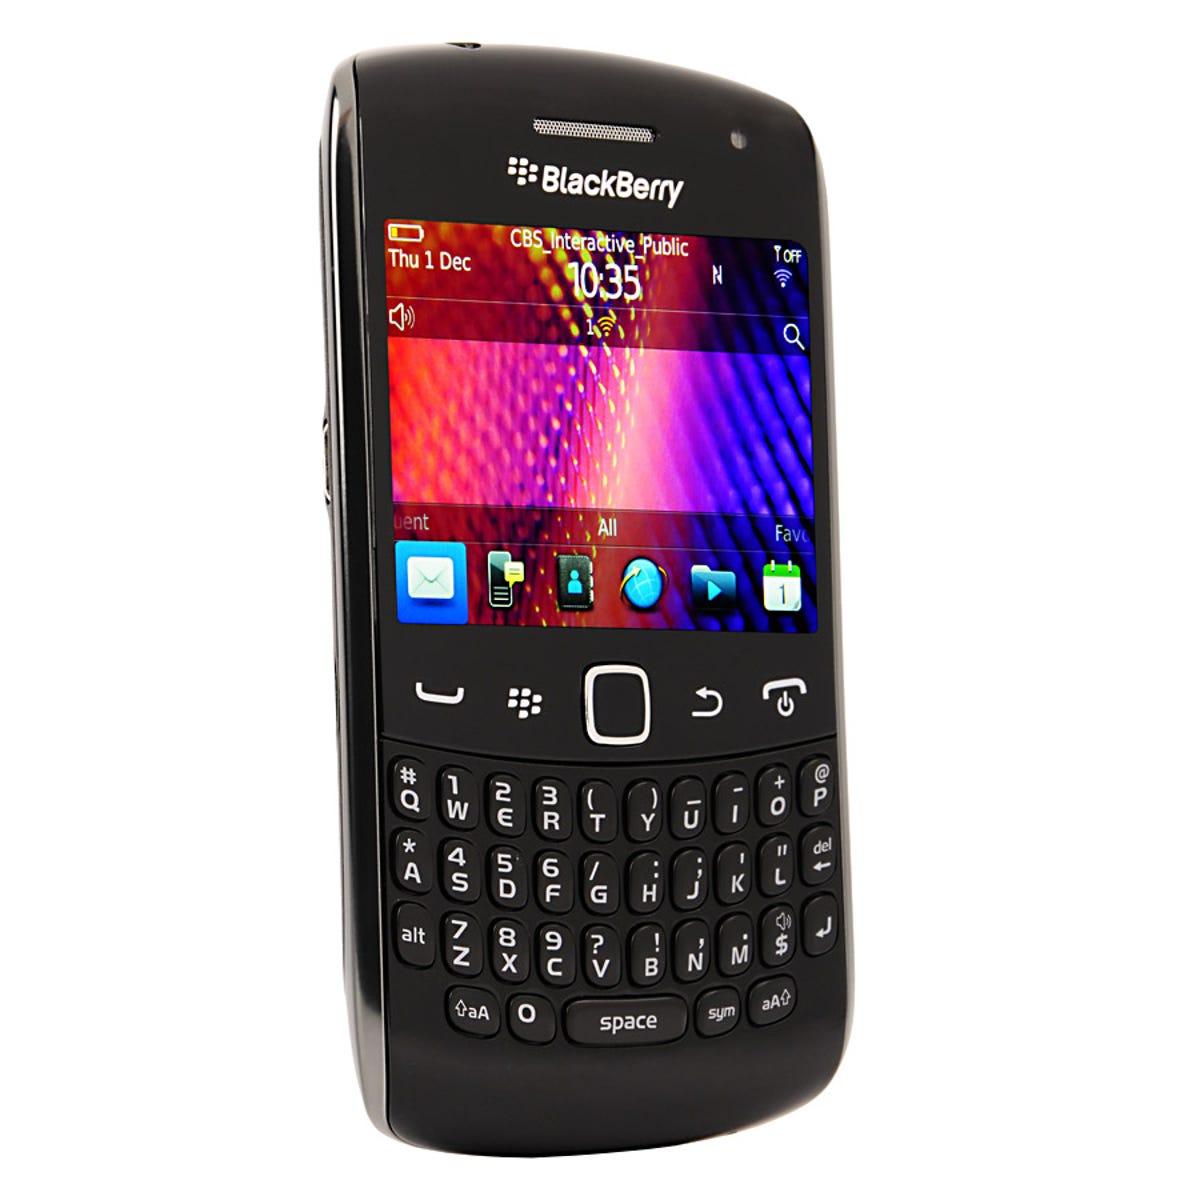 BlackBerry Curve 9360 review: BlackBerry Curve 9360 - CNET